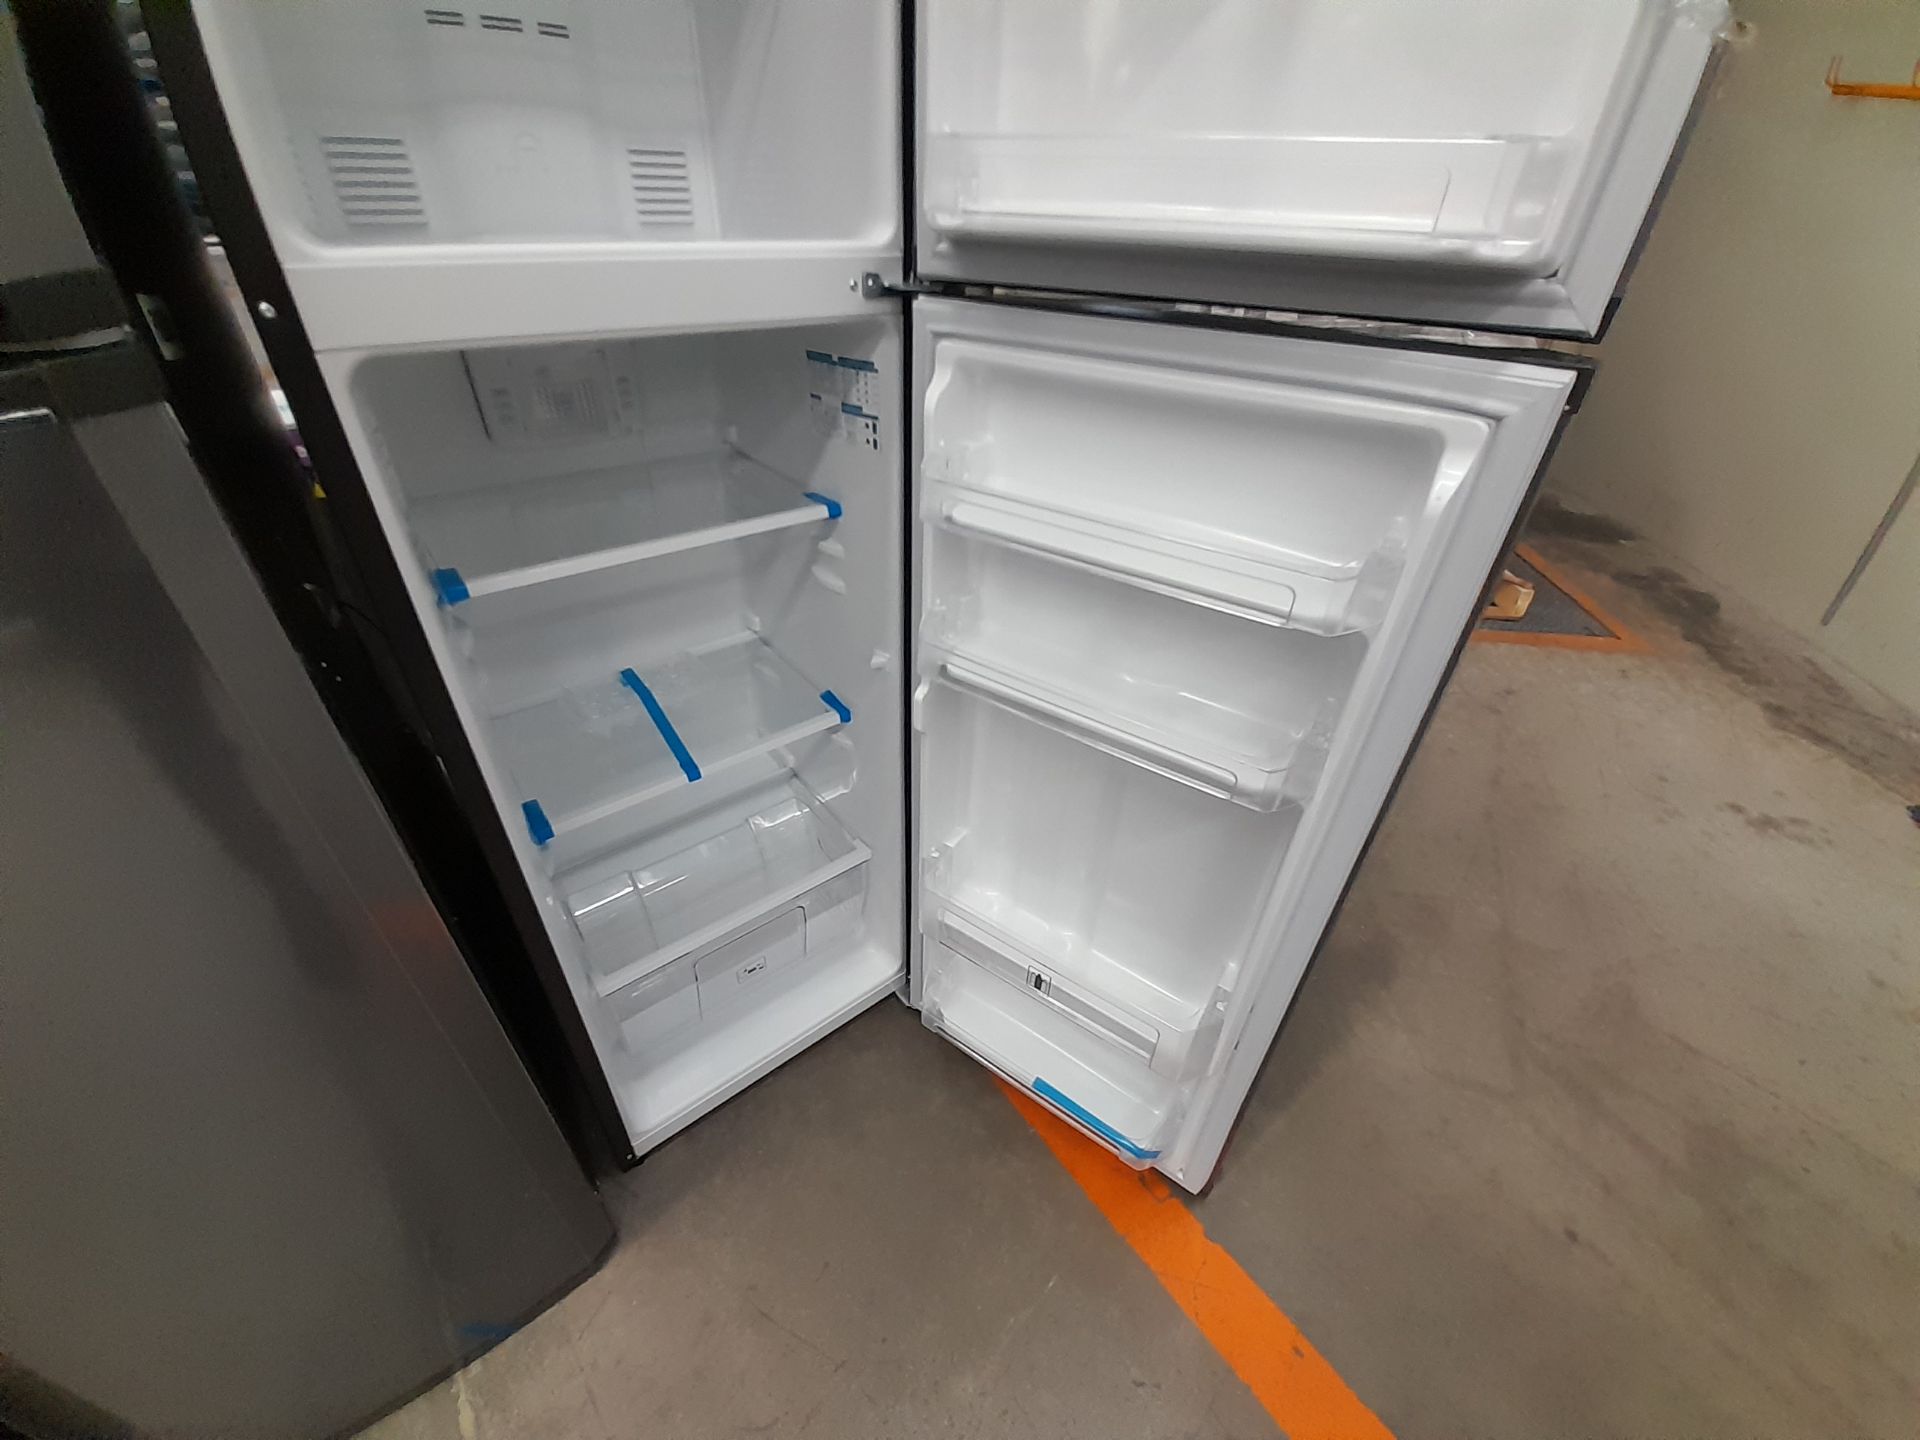 Lote de 2 refrigeradores contiene: 1 refrigerador Marca MABE, Modelo RMA250PVMRE, Serie 606836, - Image 5 of 8